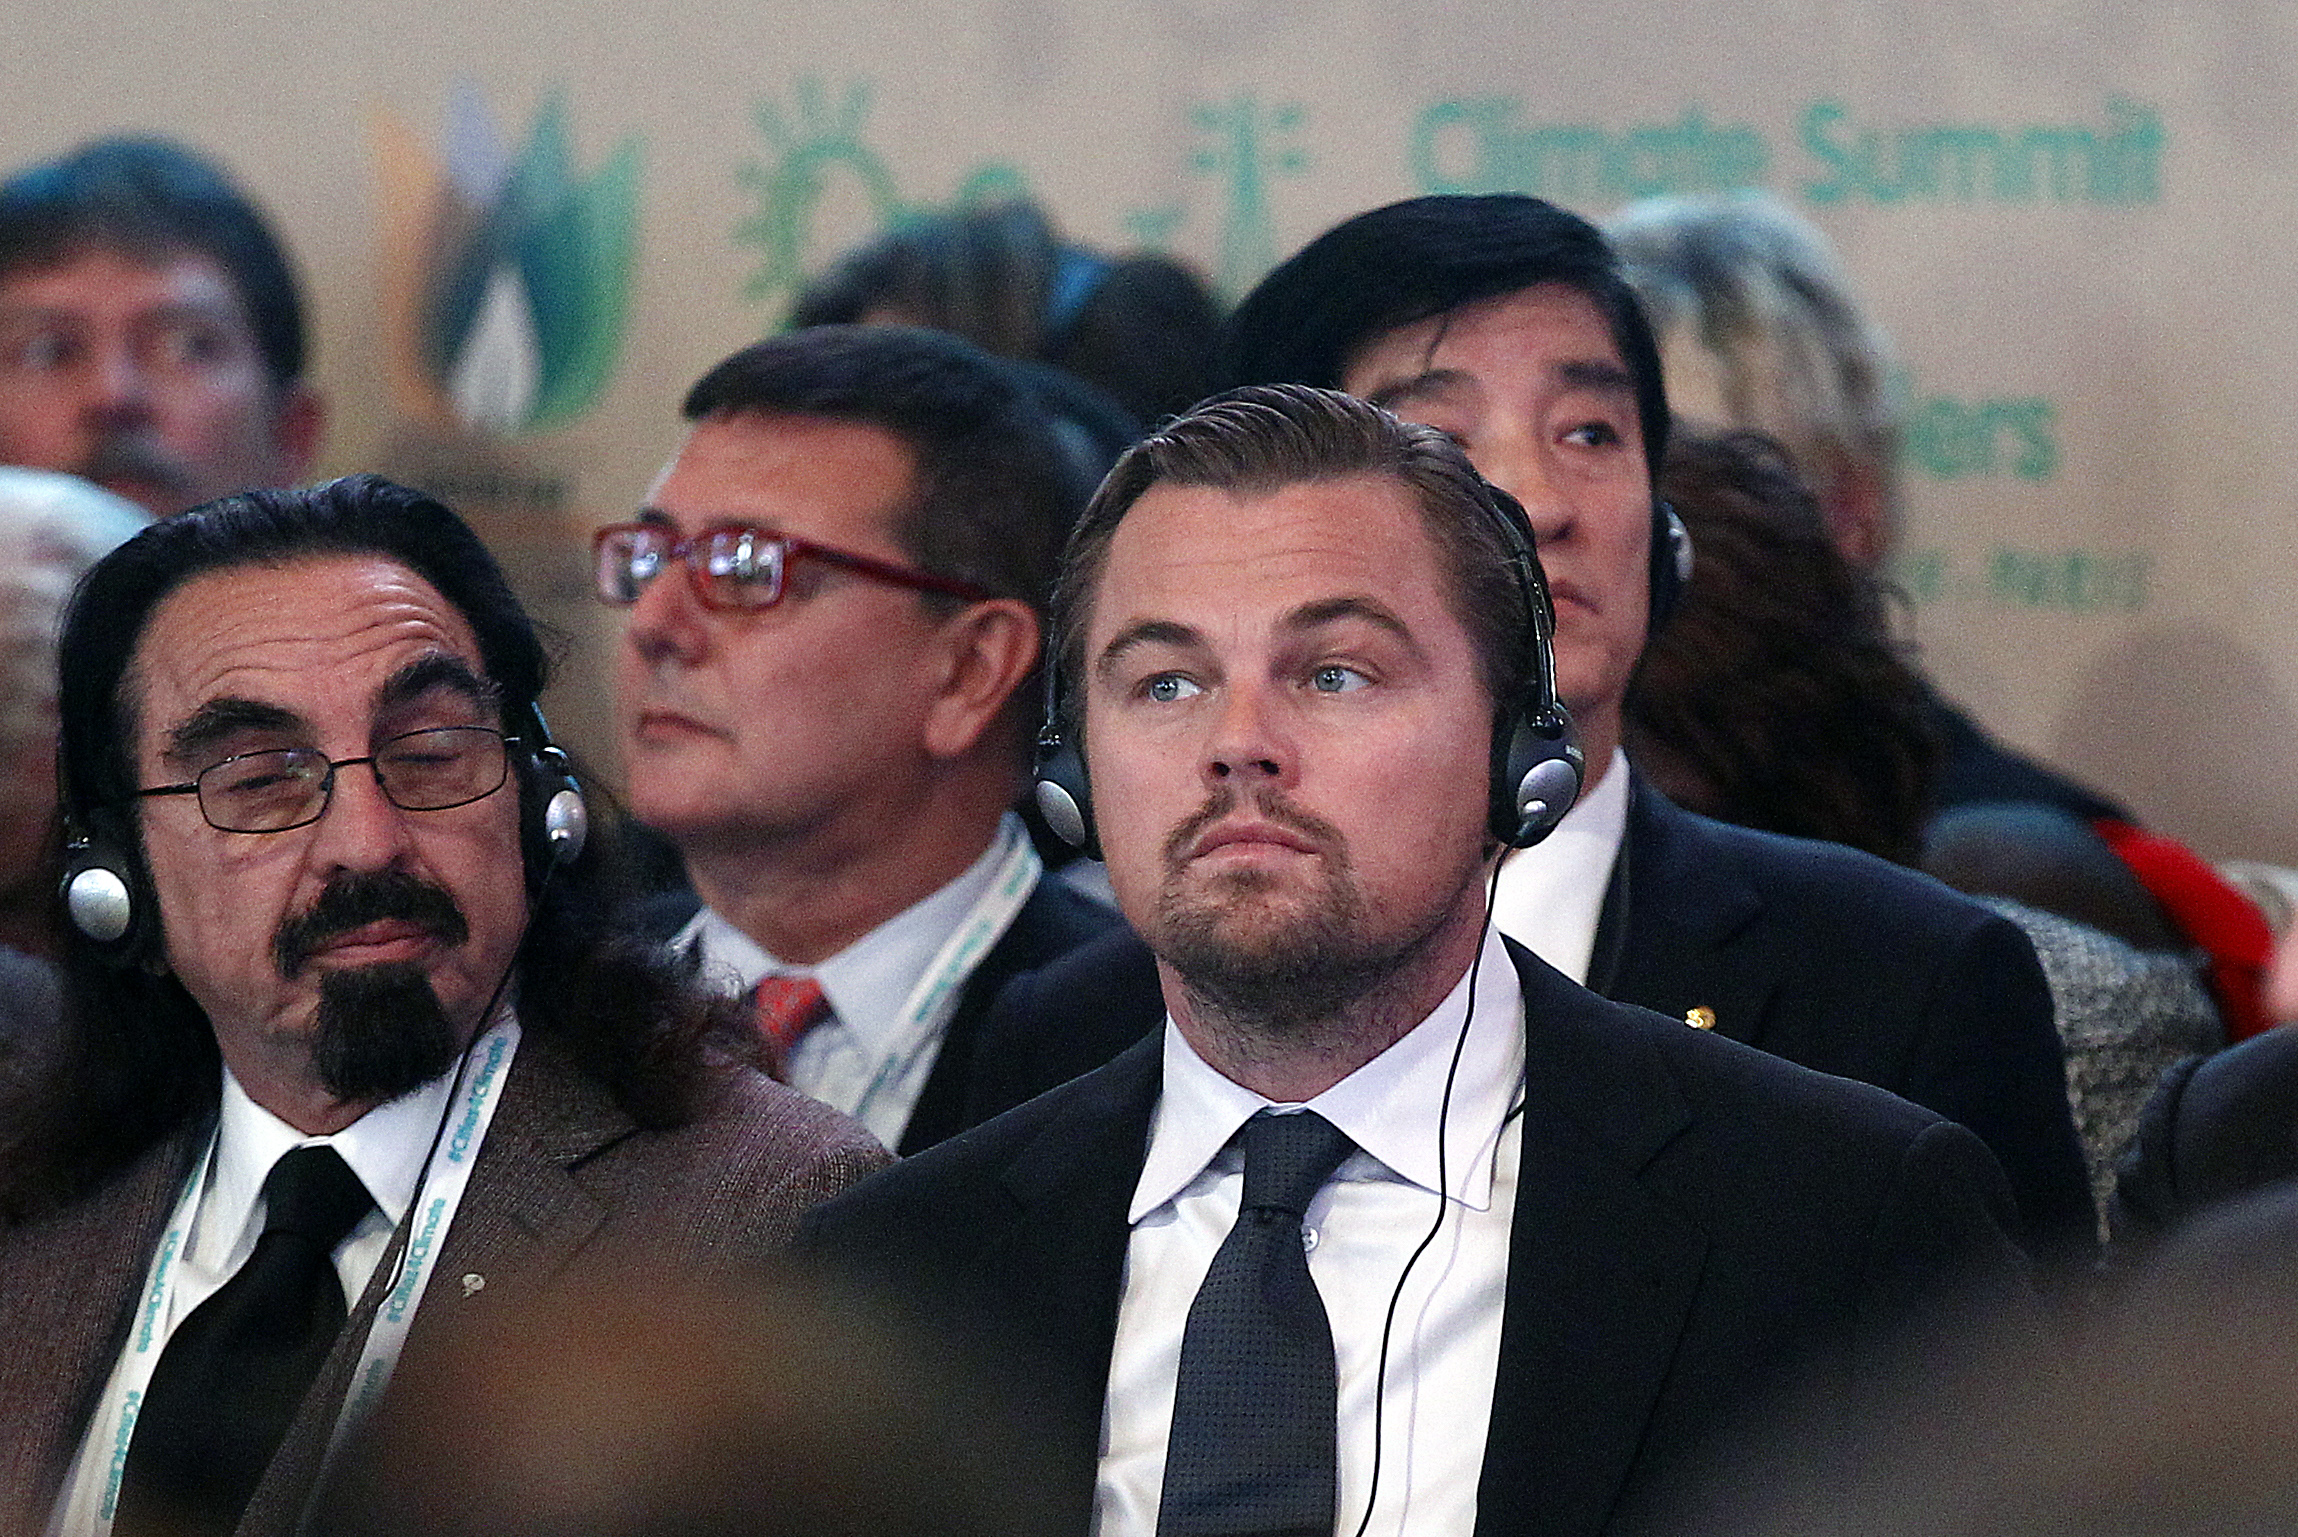 Leonardo DiCaprio y su padre George DiCaprio asisten a una conferencia sobre el cambio climático el 4 de diciembre de 2015 en París, Francia | Foto: Getty Images